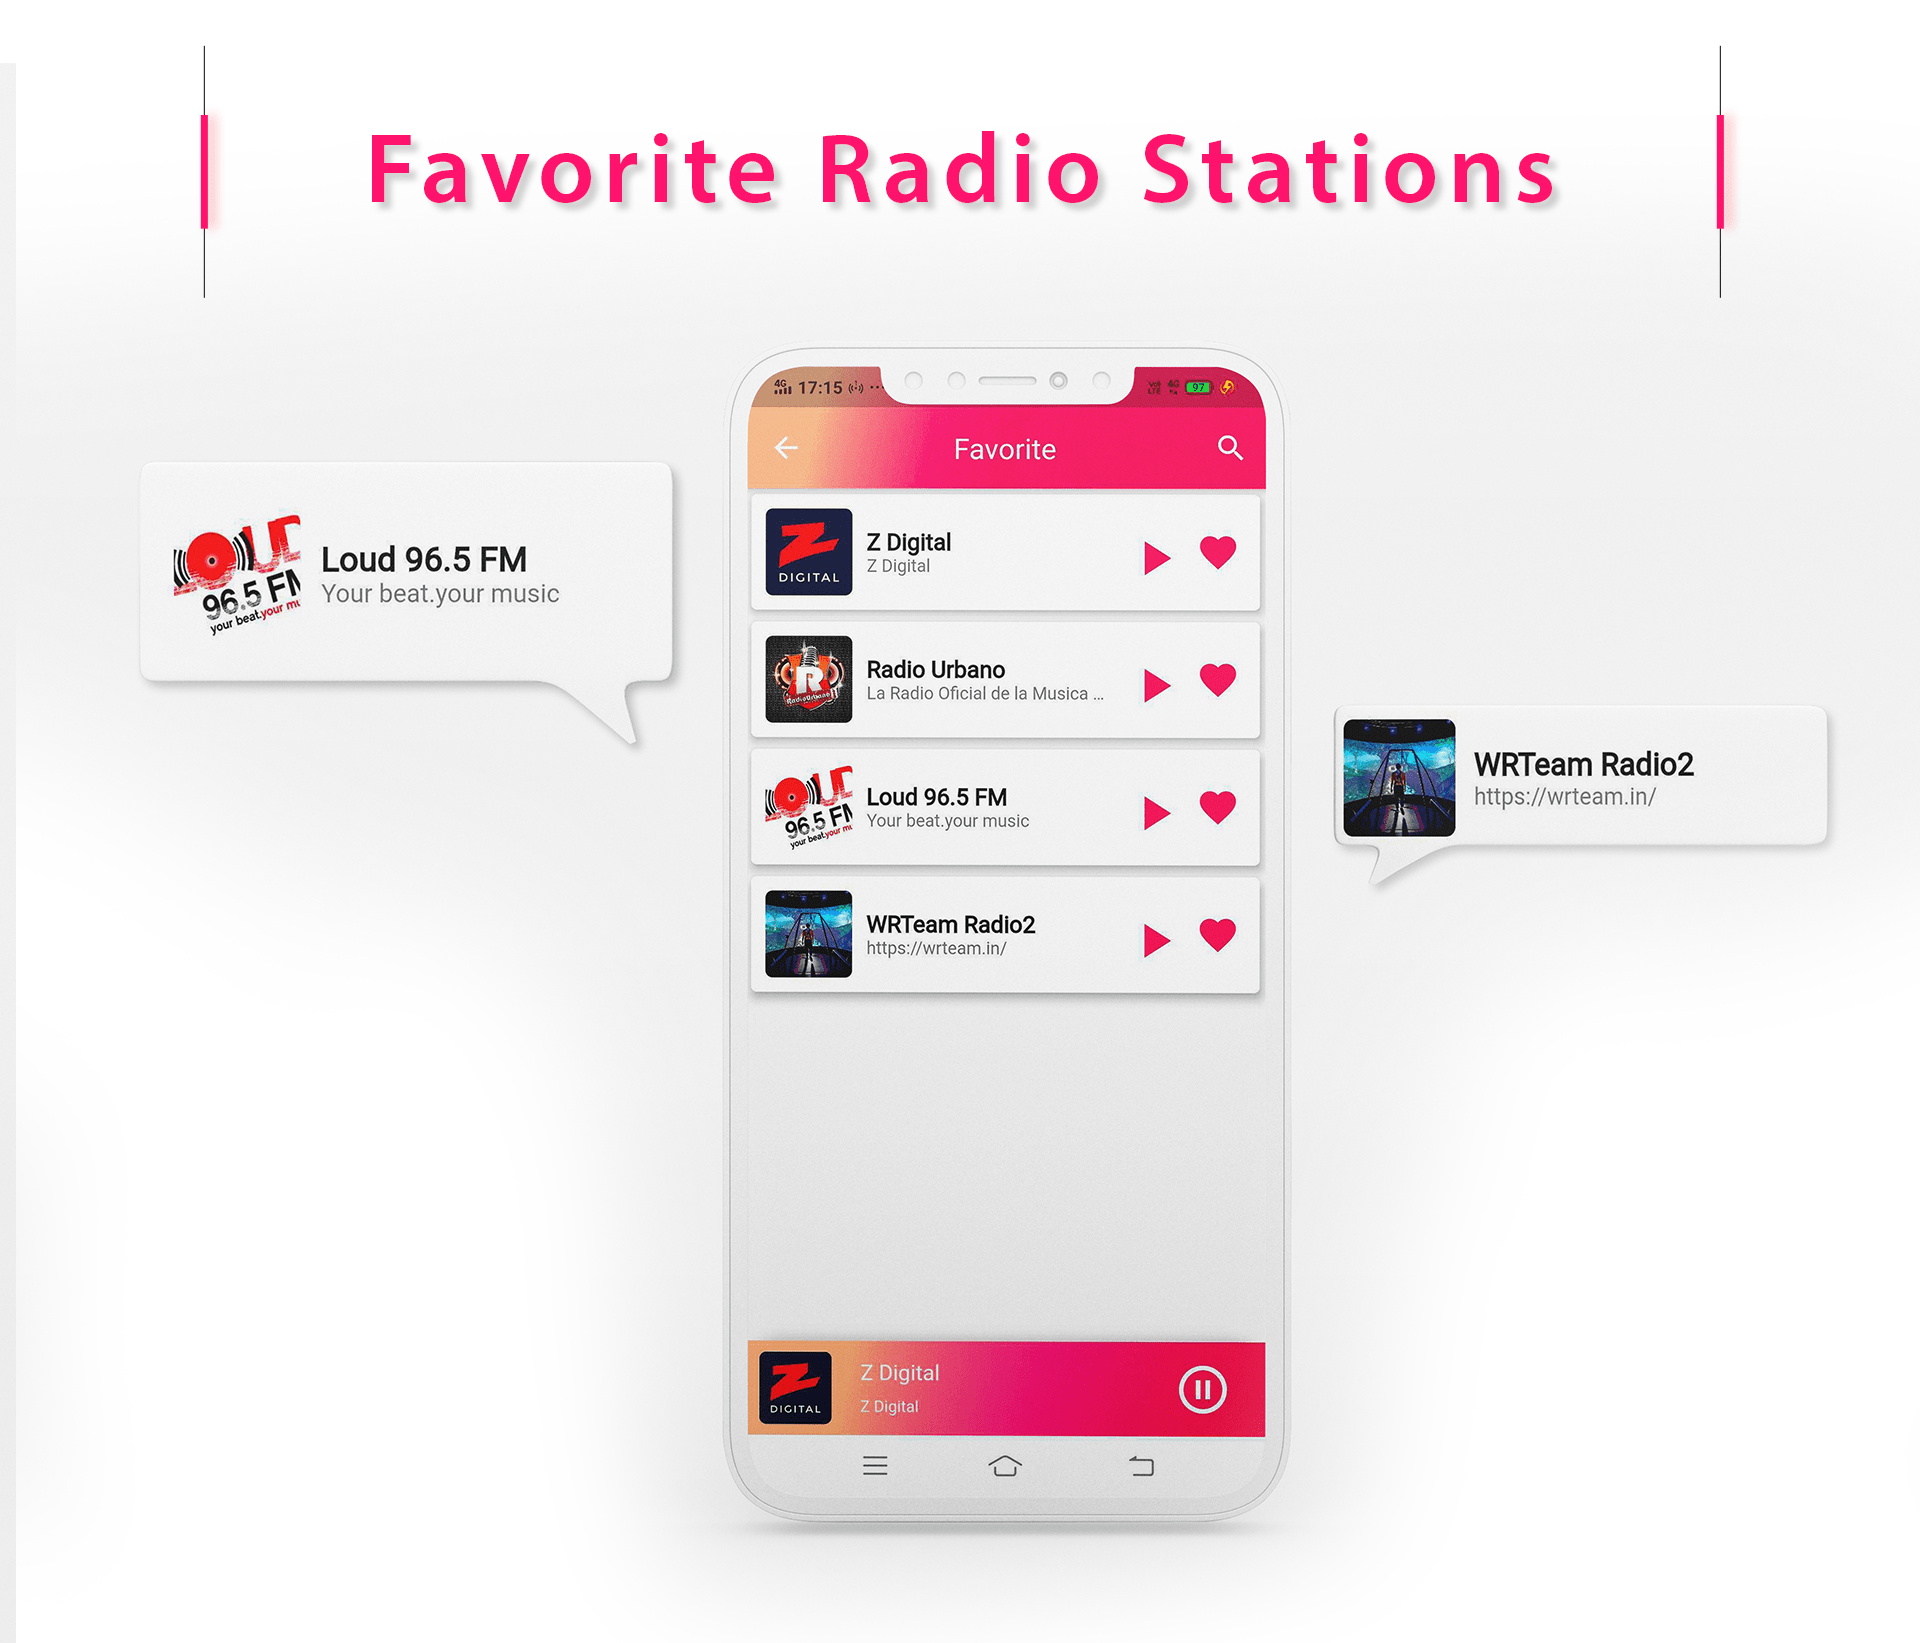 Radio Online - Flutter Full App - 16